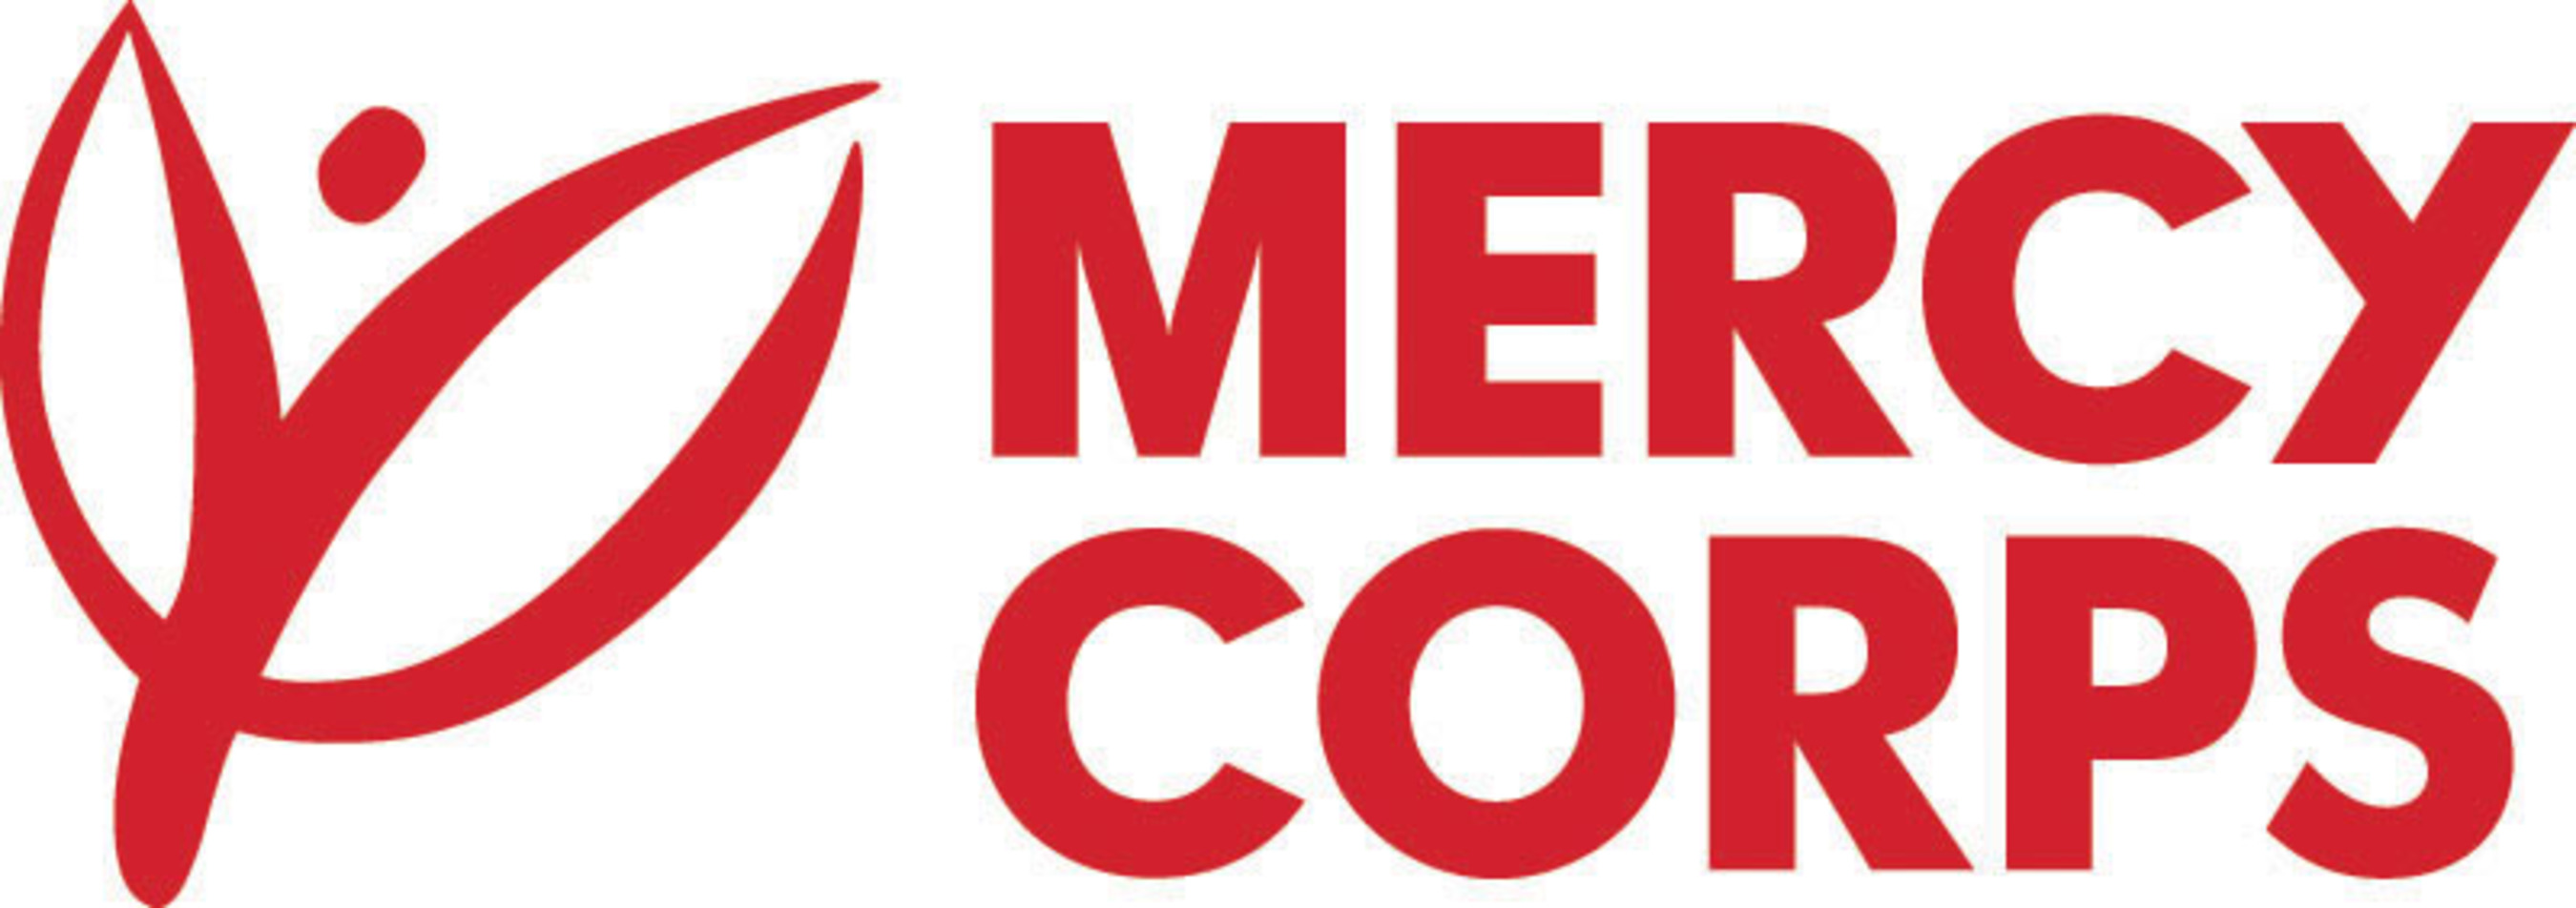 Mercy Corps logo.